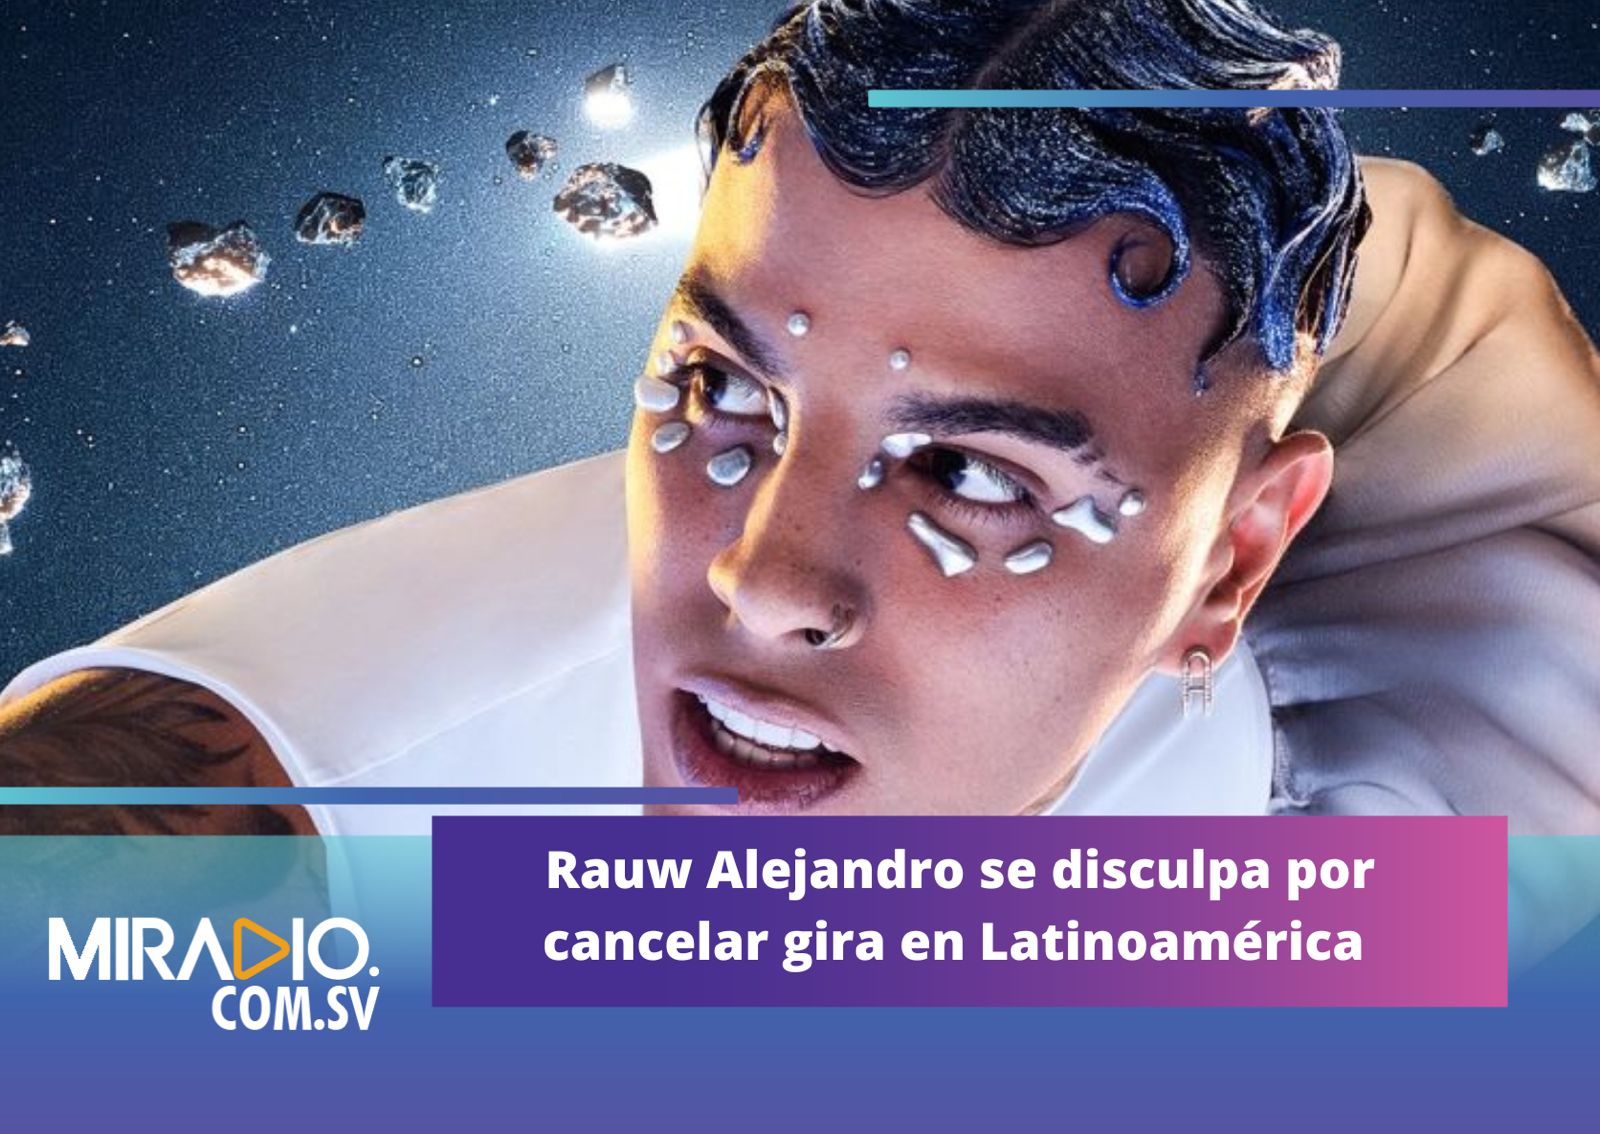 Rauw Alejandro se disculpa por cancelar gira en Latinoamérica